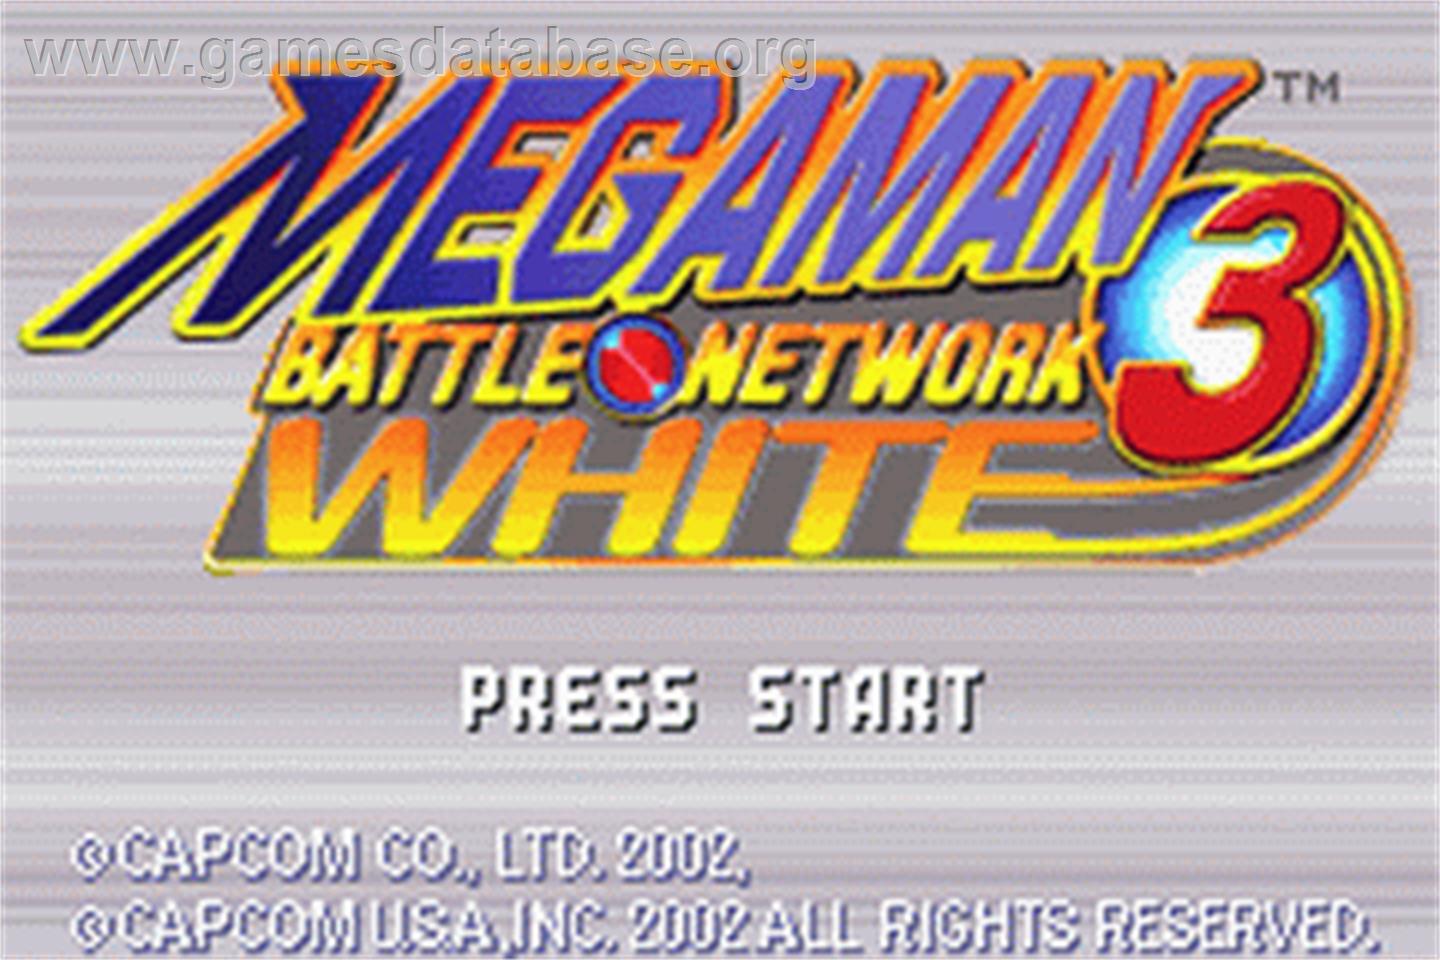 Mega Man Battle Network 3: White Version - Nintendo Game Boy Advance - Artwork - Title Screen